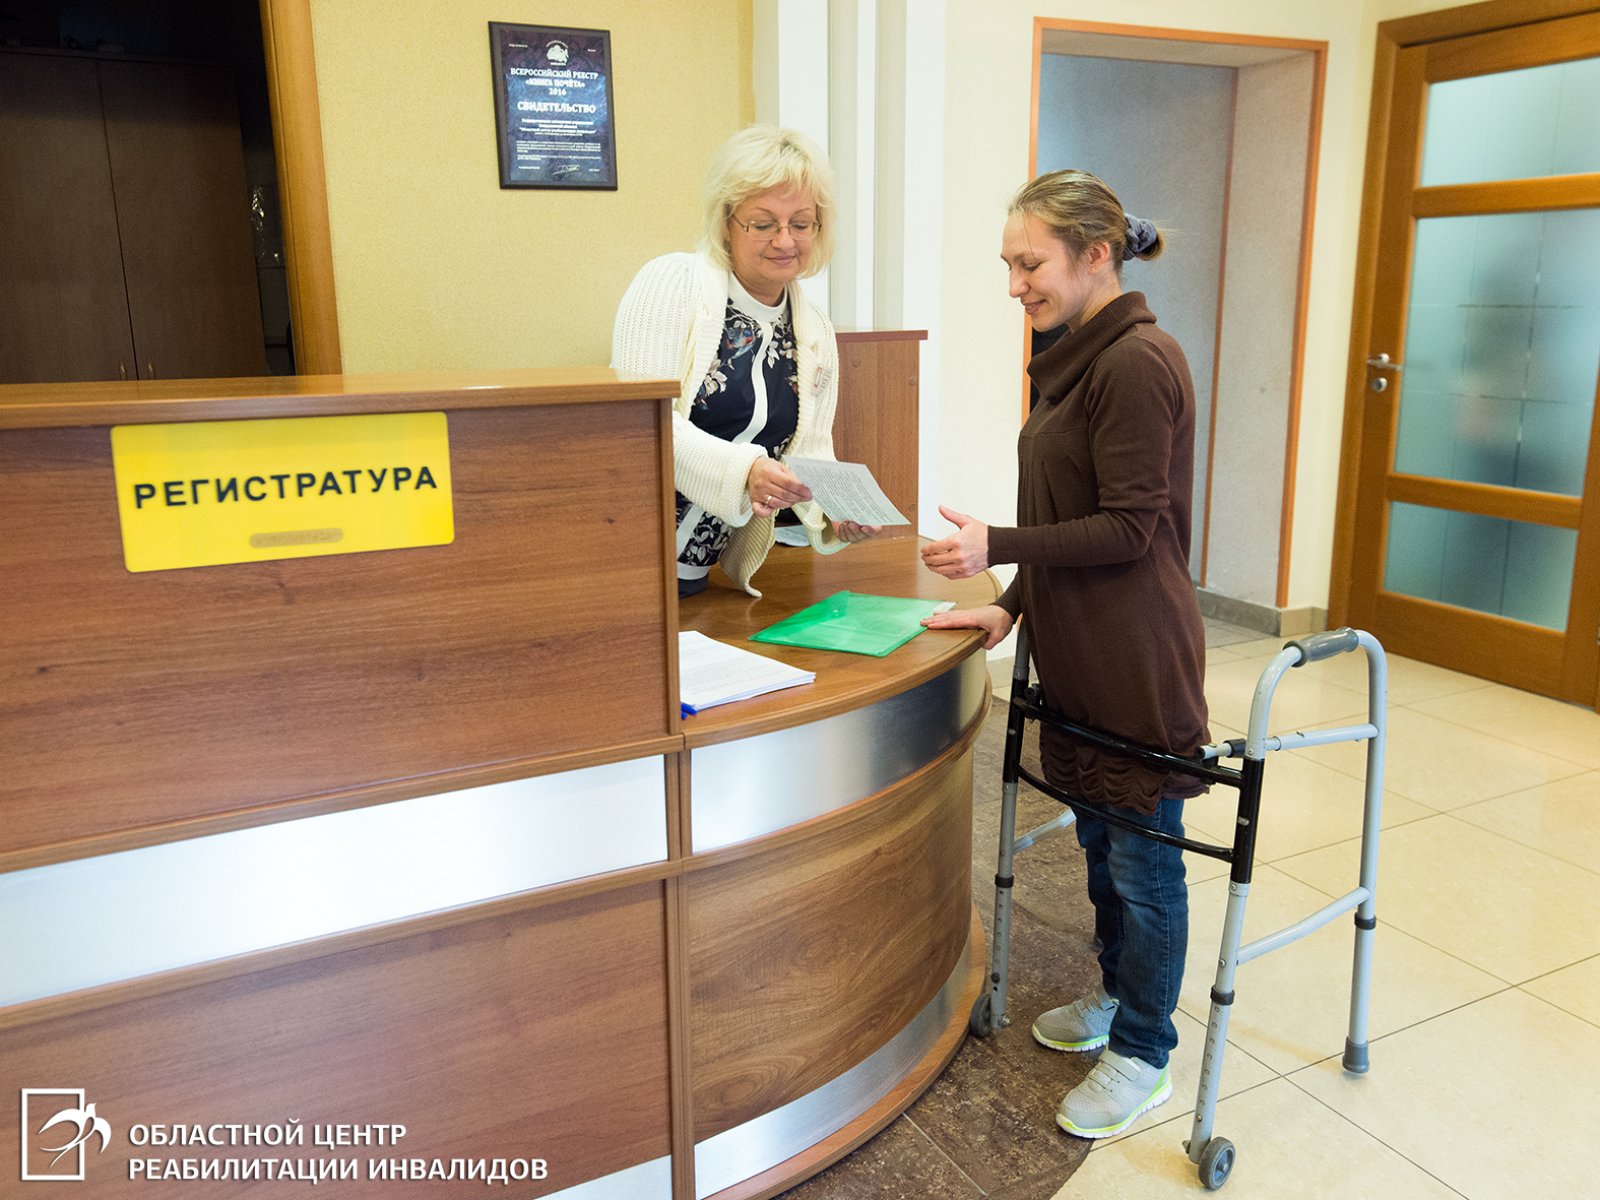 Областной центр реабилитации инвалидов возобновил предоставление социальных услуг